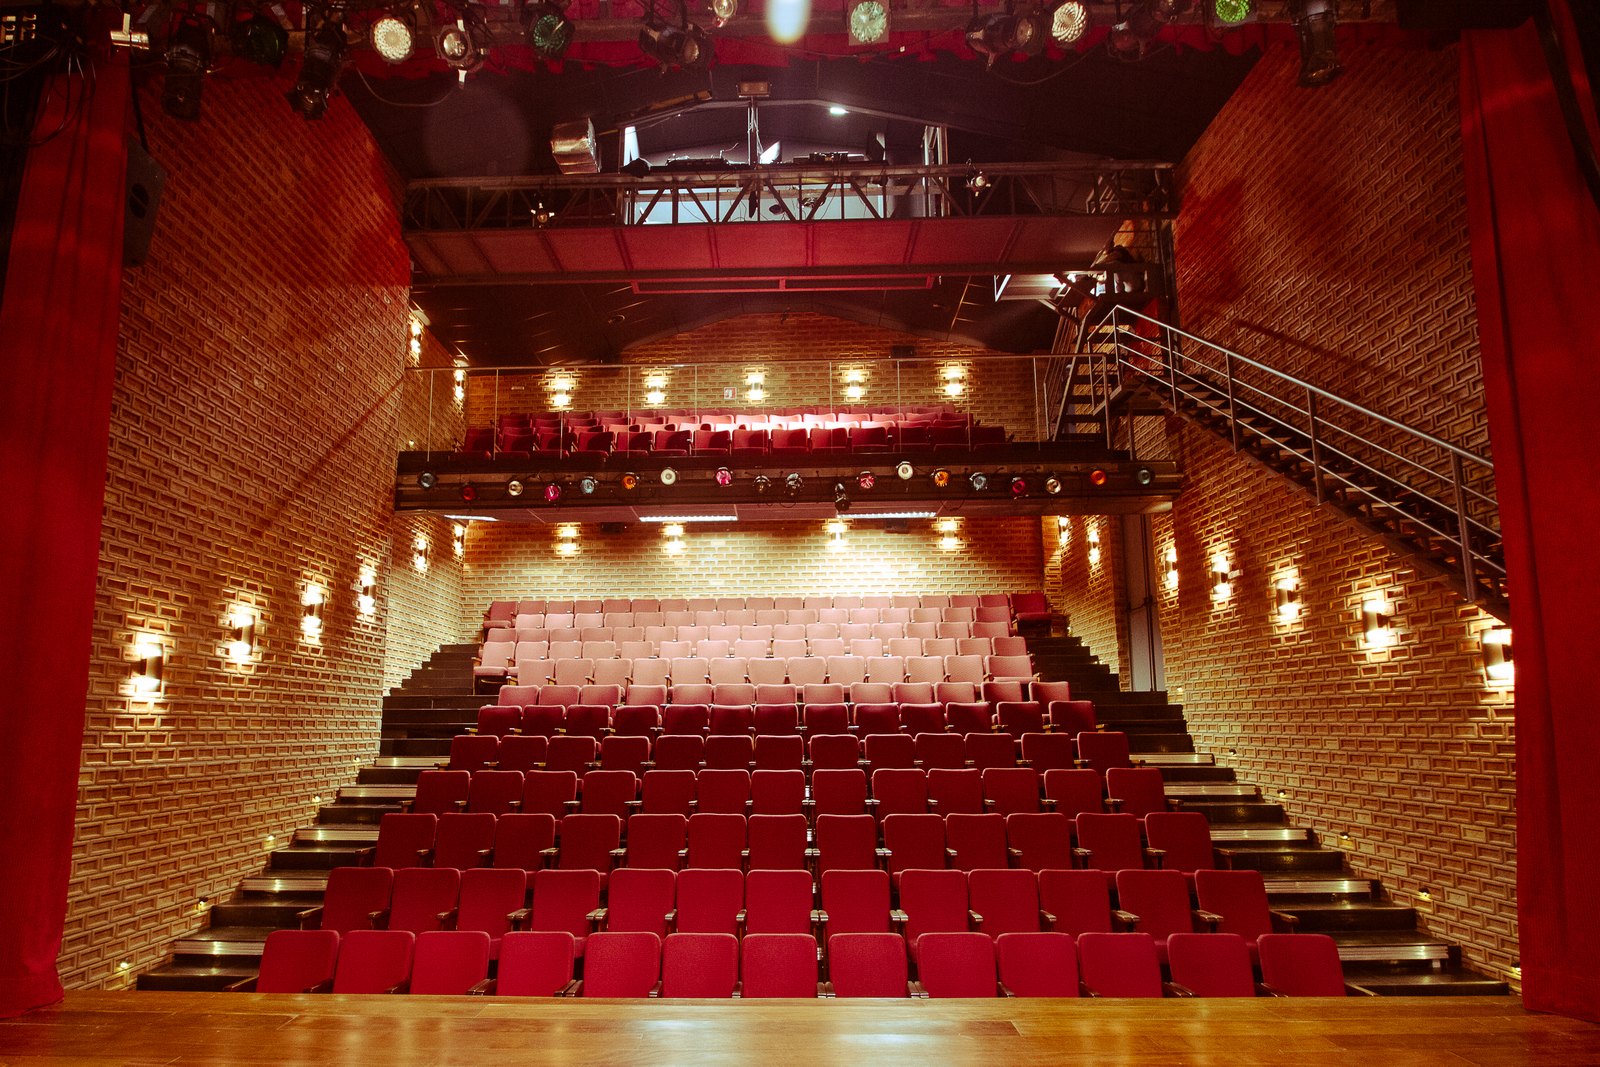 Teatro Viradalata